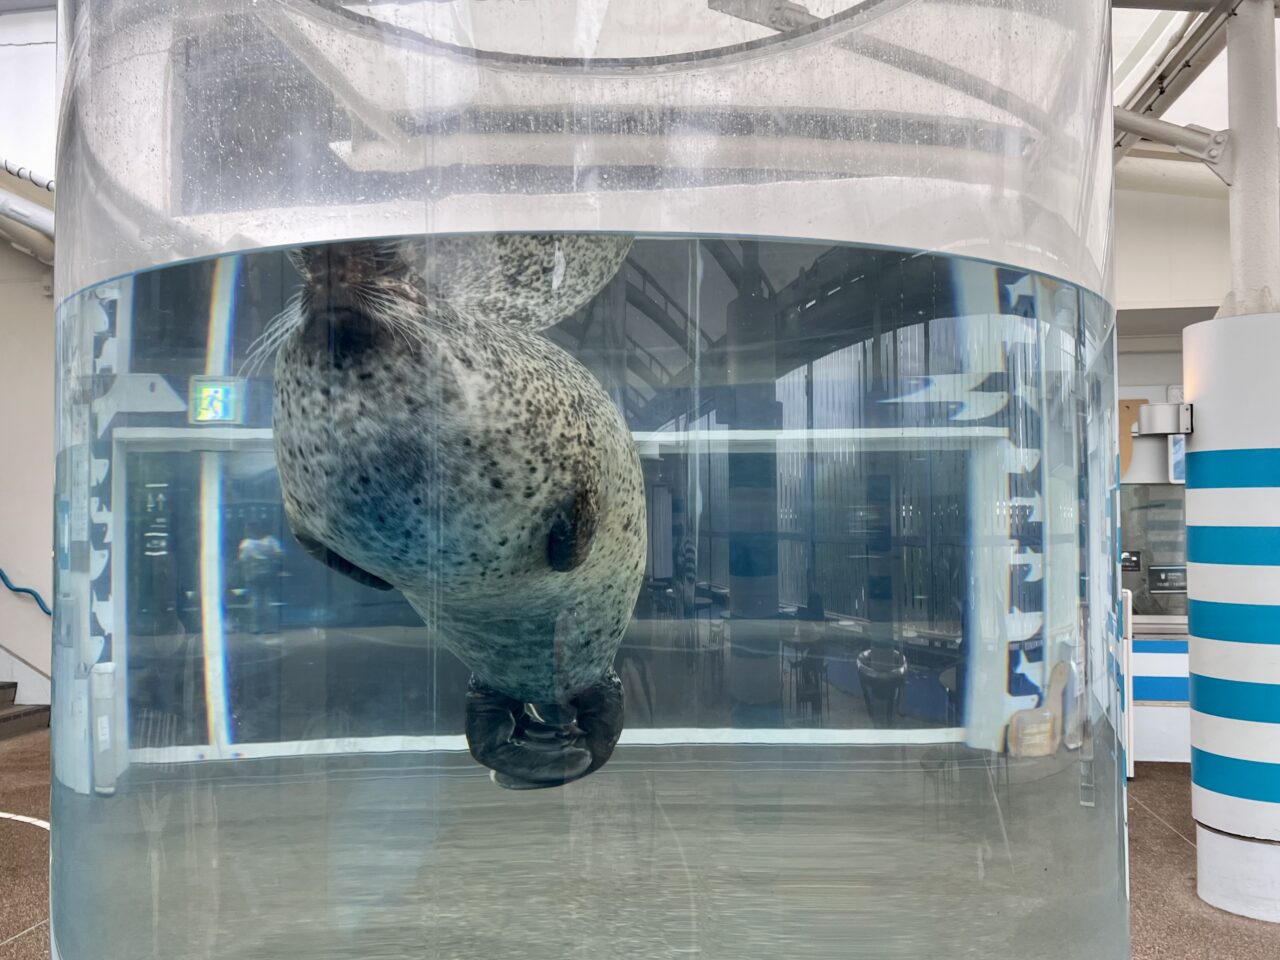 京都水族館のゴマフアザラシ